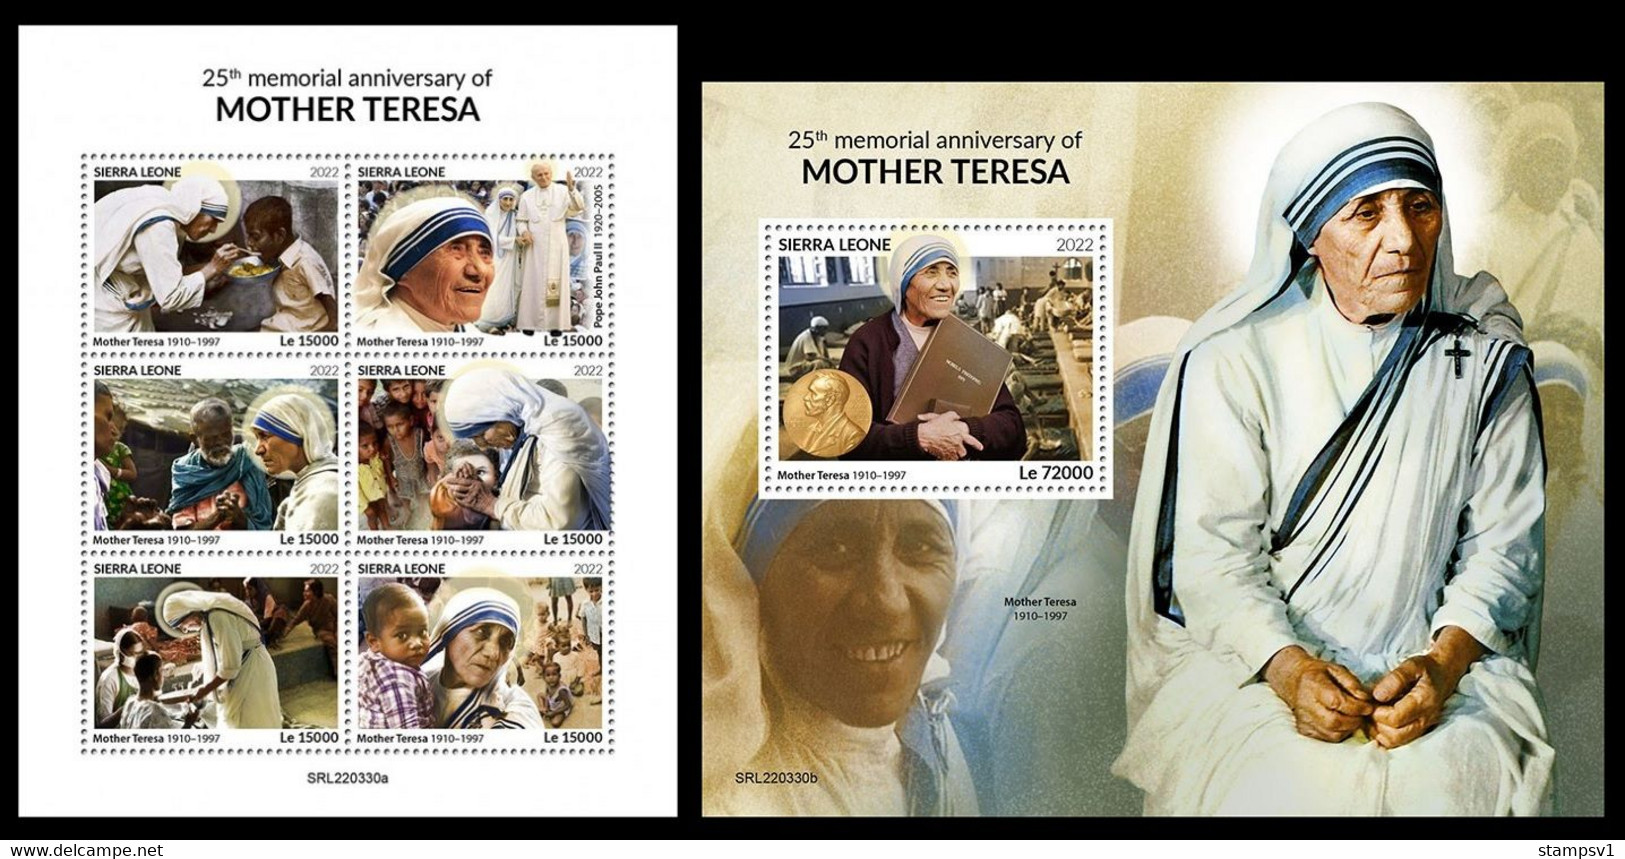 Sierra Leone 2022 Mother Teresa. (330) OFFICIAL ISSUE - Madre Teresa